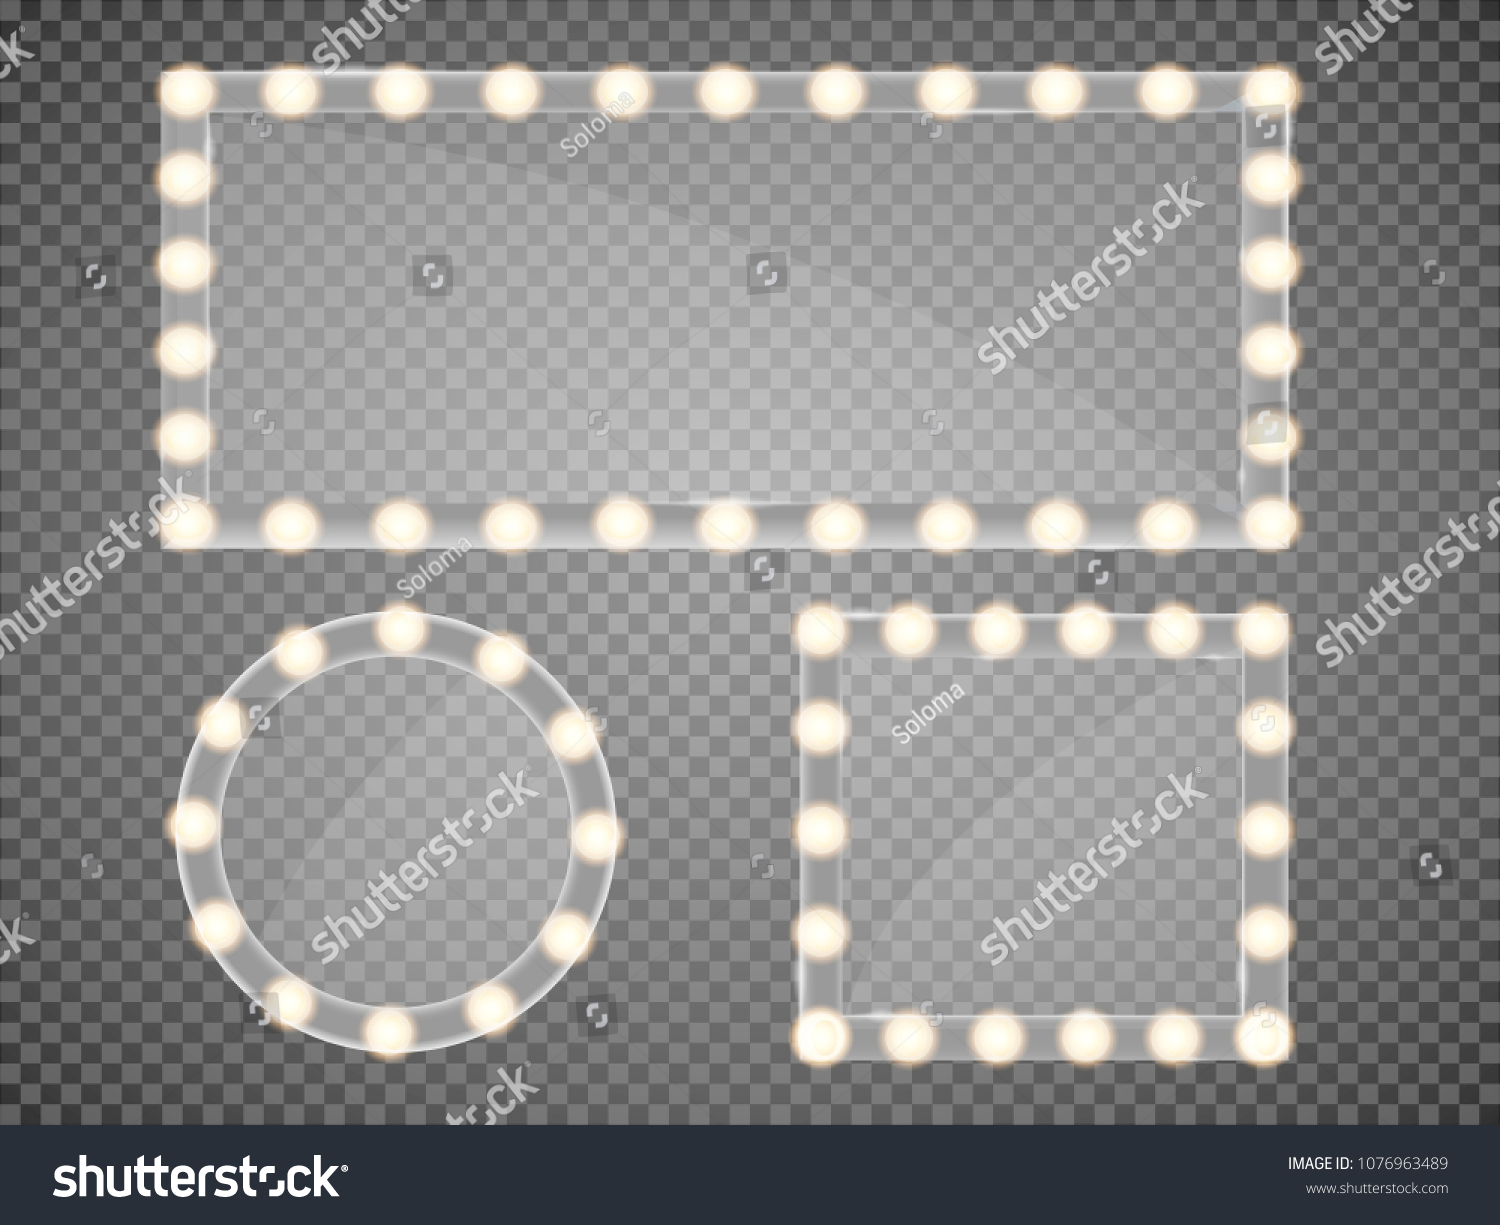 SVG of Mirror in frame with light makeup lights for changing room or backroom, on transparent background vector illustration svg